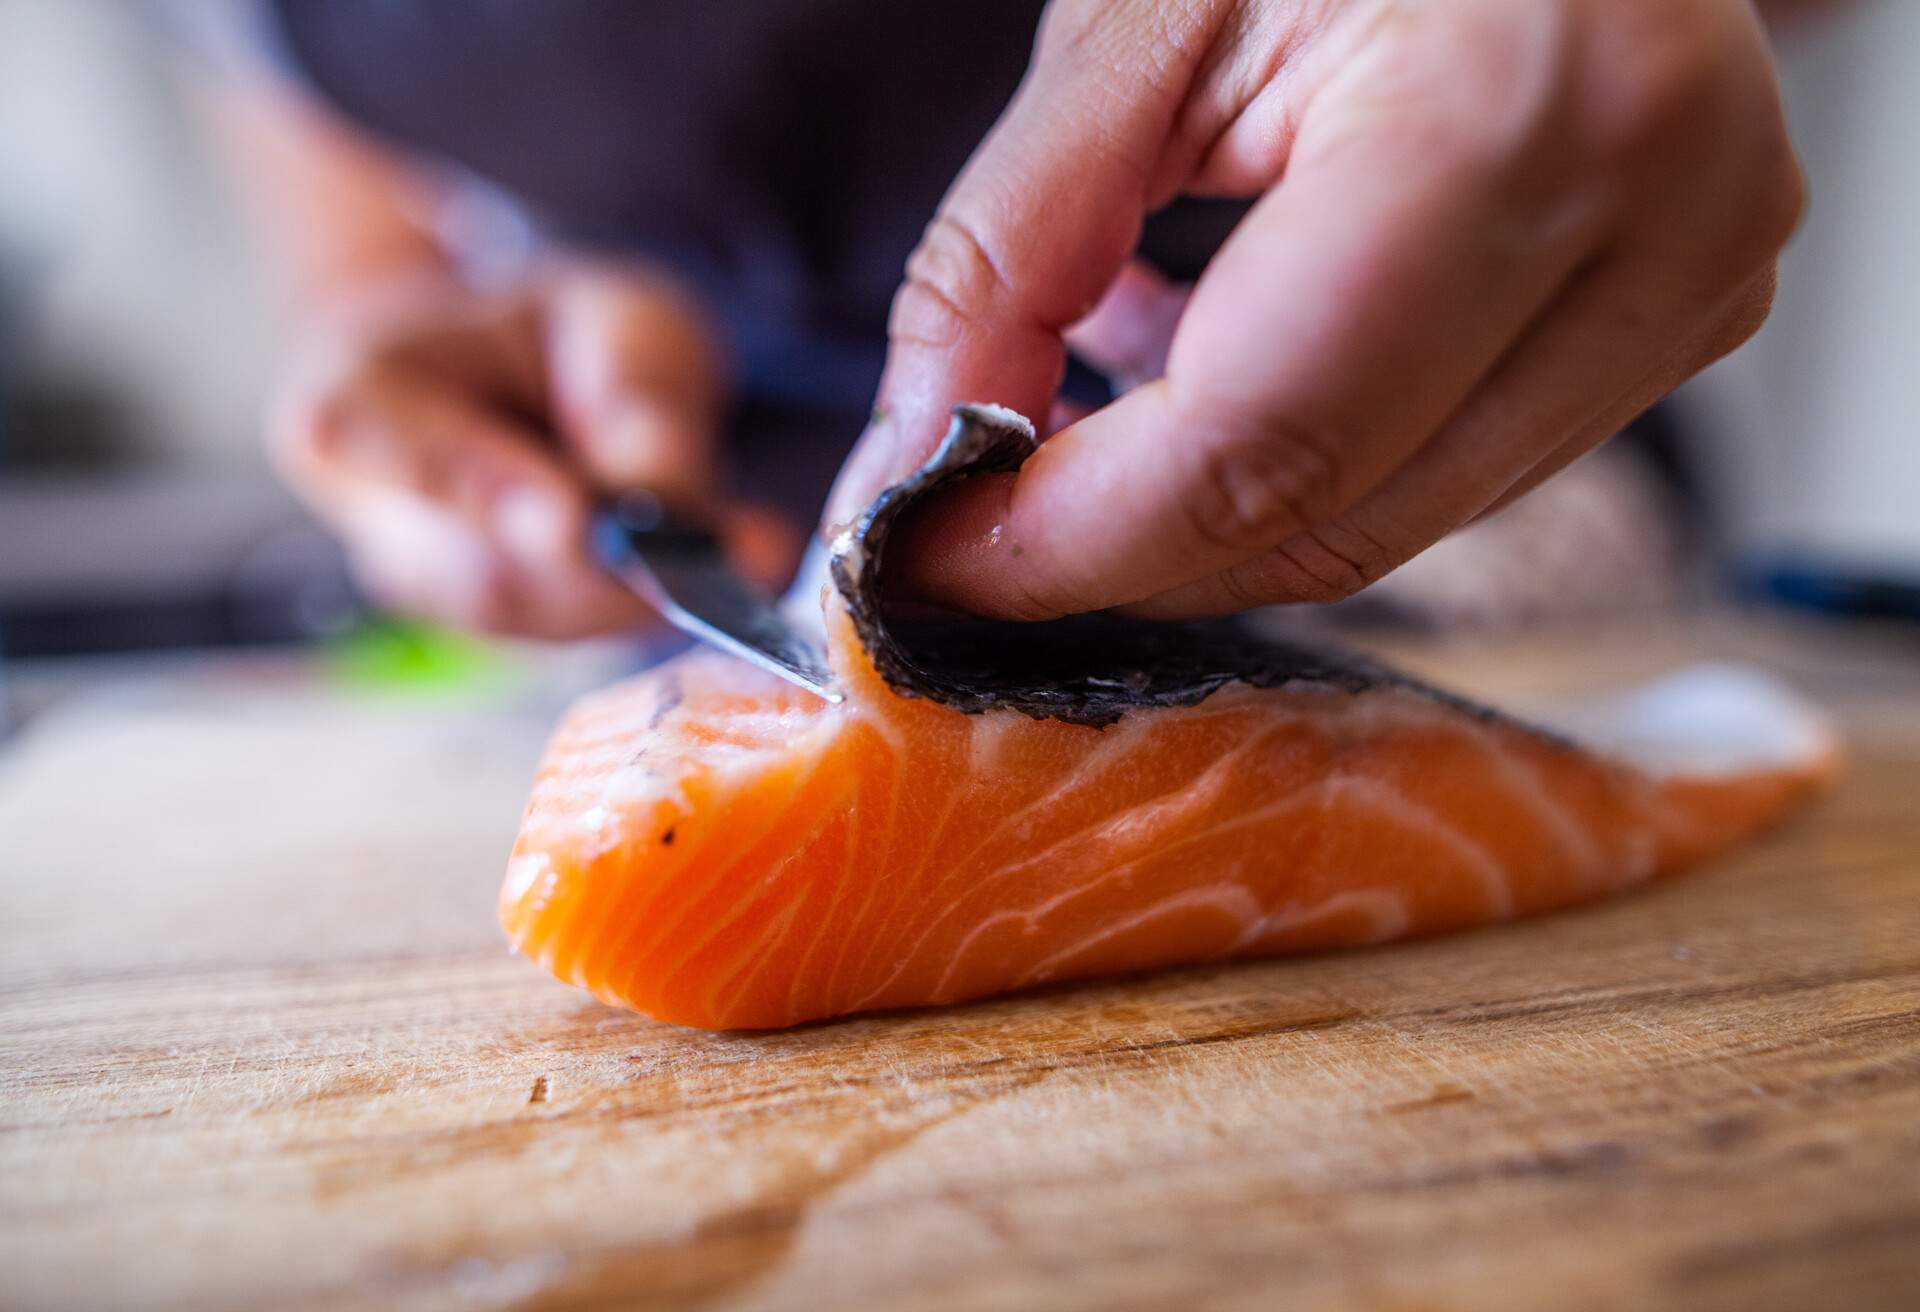 Cette photographie présente en cuisine une personne en train de découper du poisson, notamment du saumon, un pavé.